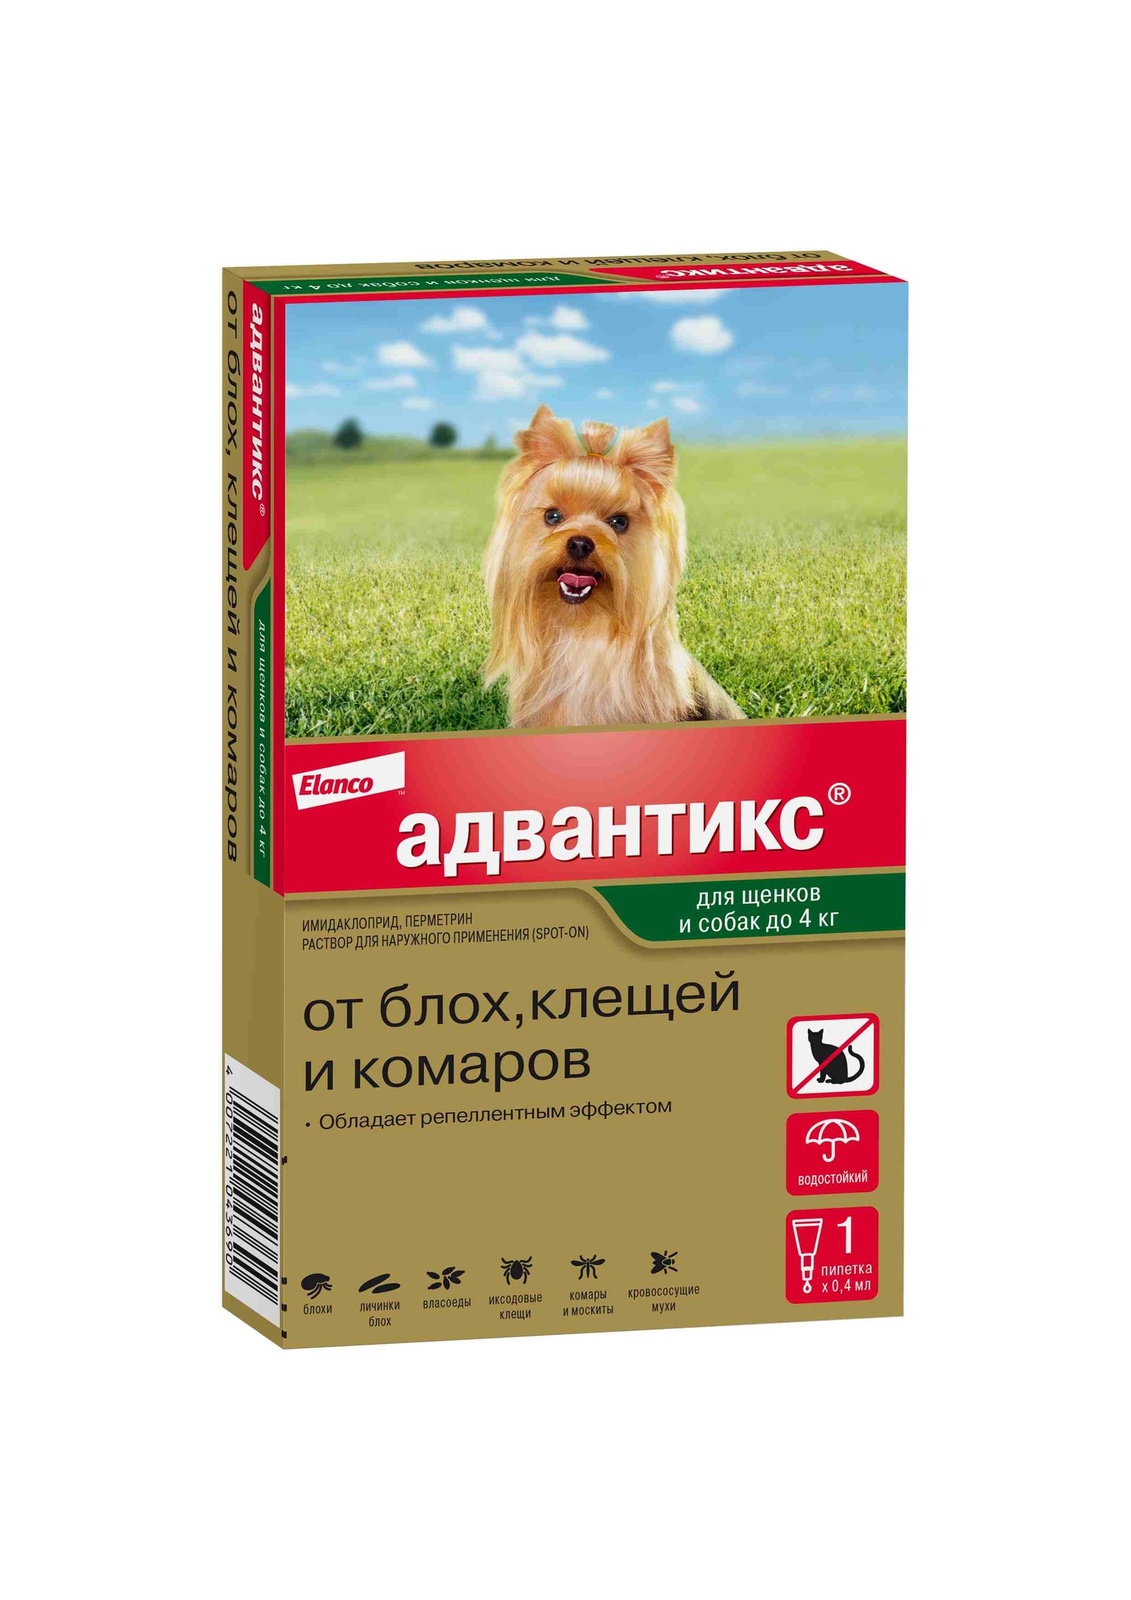 Elanco адвантикс®  для собак весом до 4 кг для защиты от блох, иксодовых клещей, летающих насекомых и переносимых ими заболеваний. 1 пипетка в упаковке (34 г)